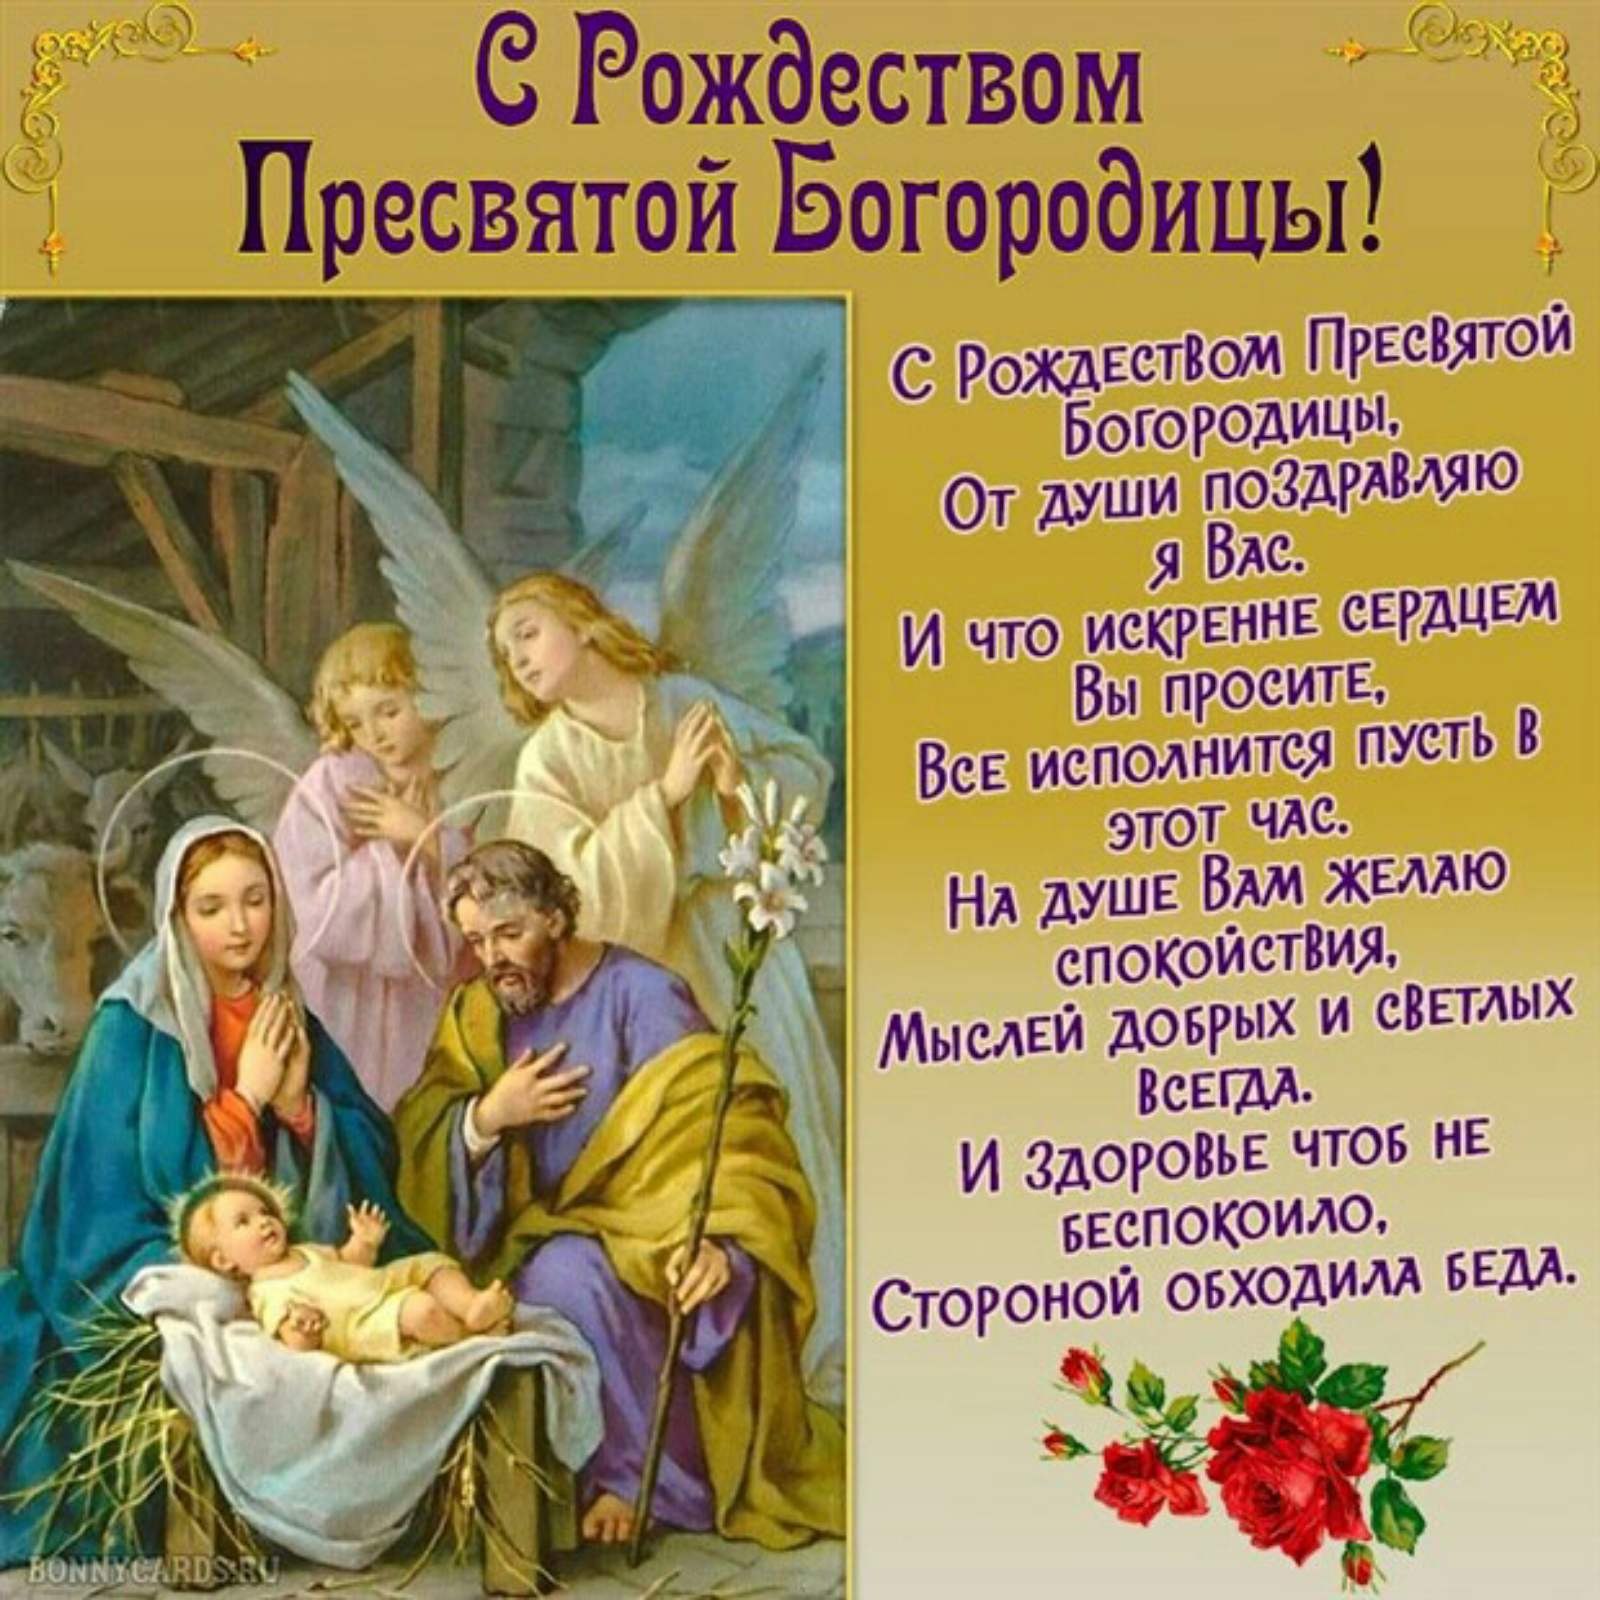 С праздником Рождества Пресвятой Богородицы 21 сентября